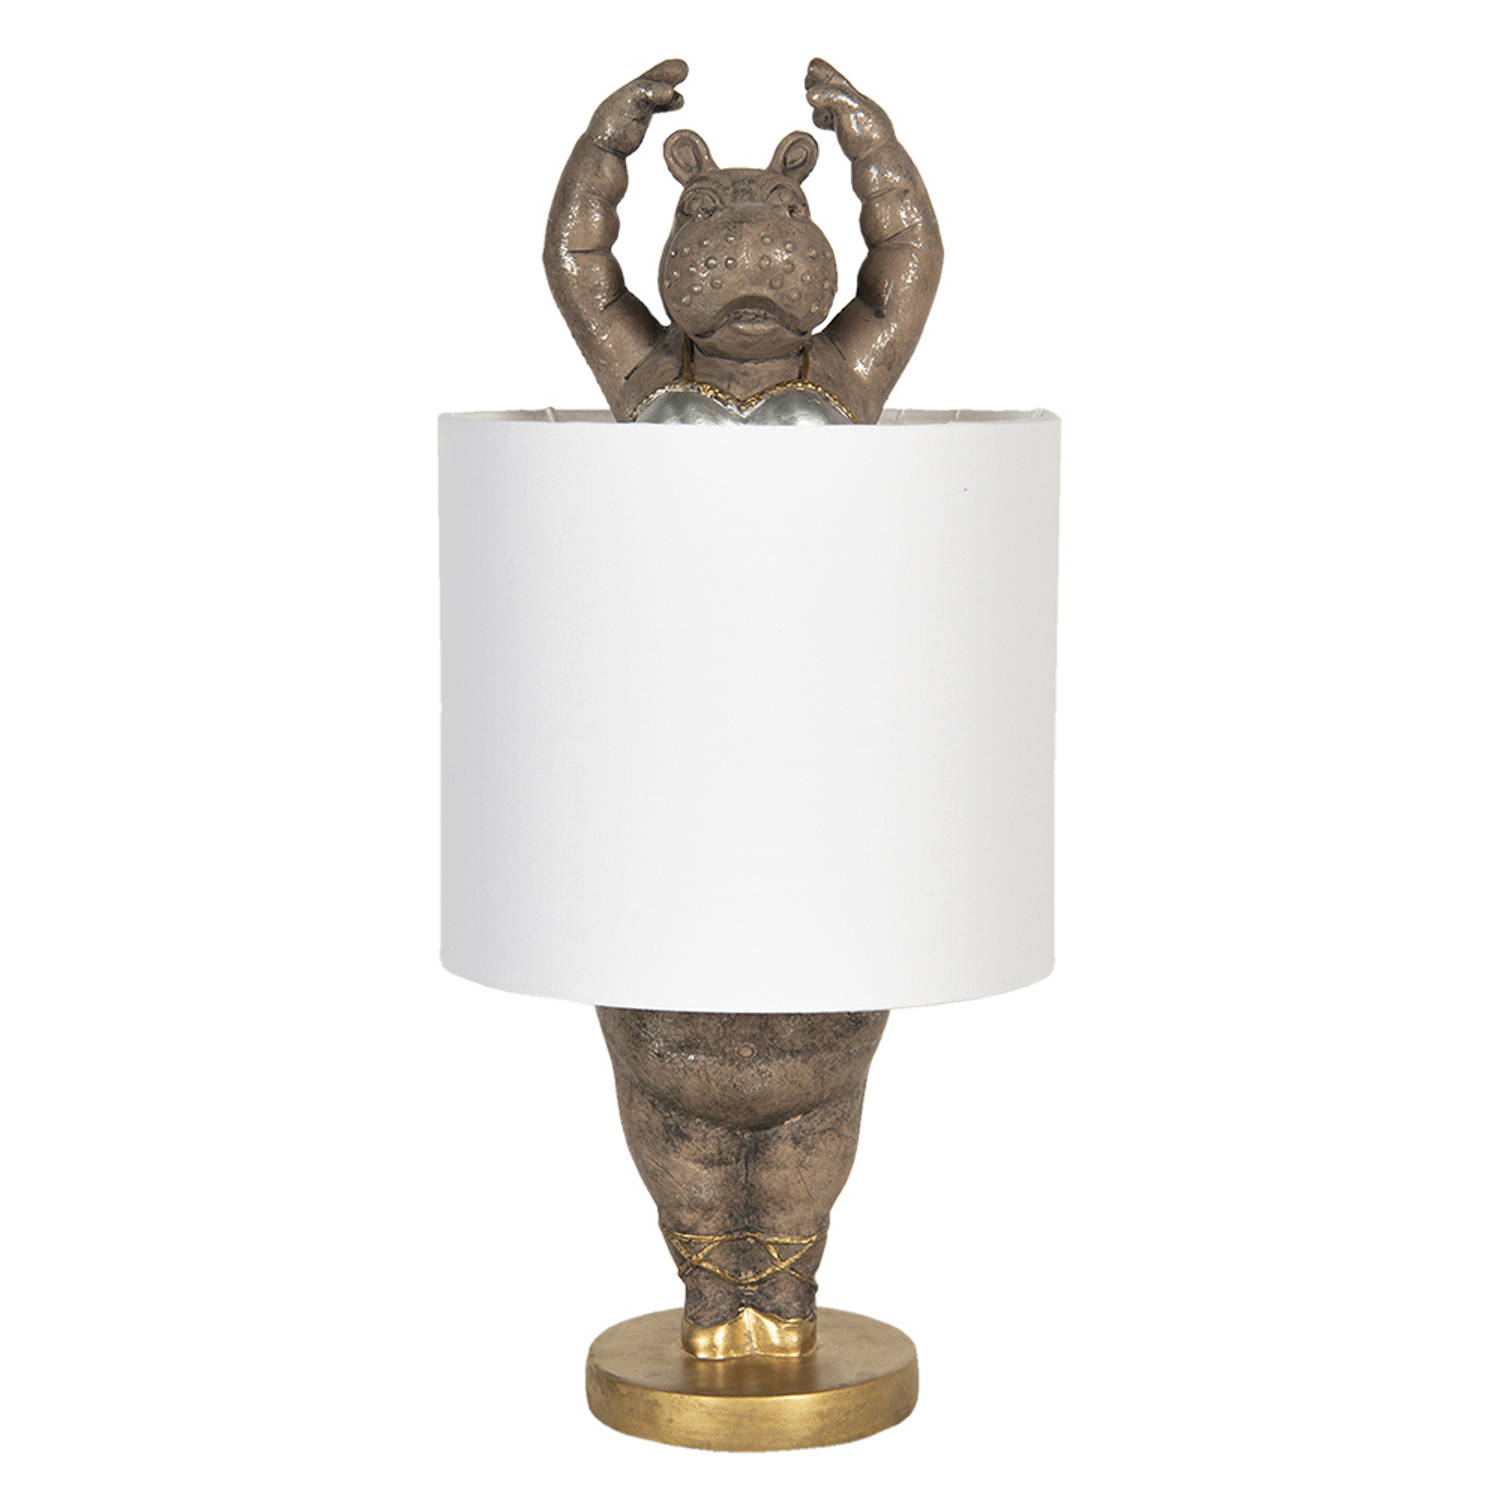 HAES DECO - Tafellamp - City Jungle - Ballerina Nijlpaard, formaat Ø 20x44 cm - Goudkleurig met Witte Lampenkap - Bureaulamp, Sfeerlamp, Nachtlampje